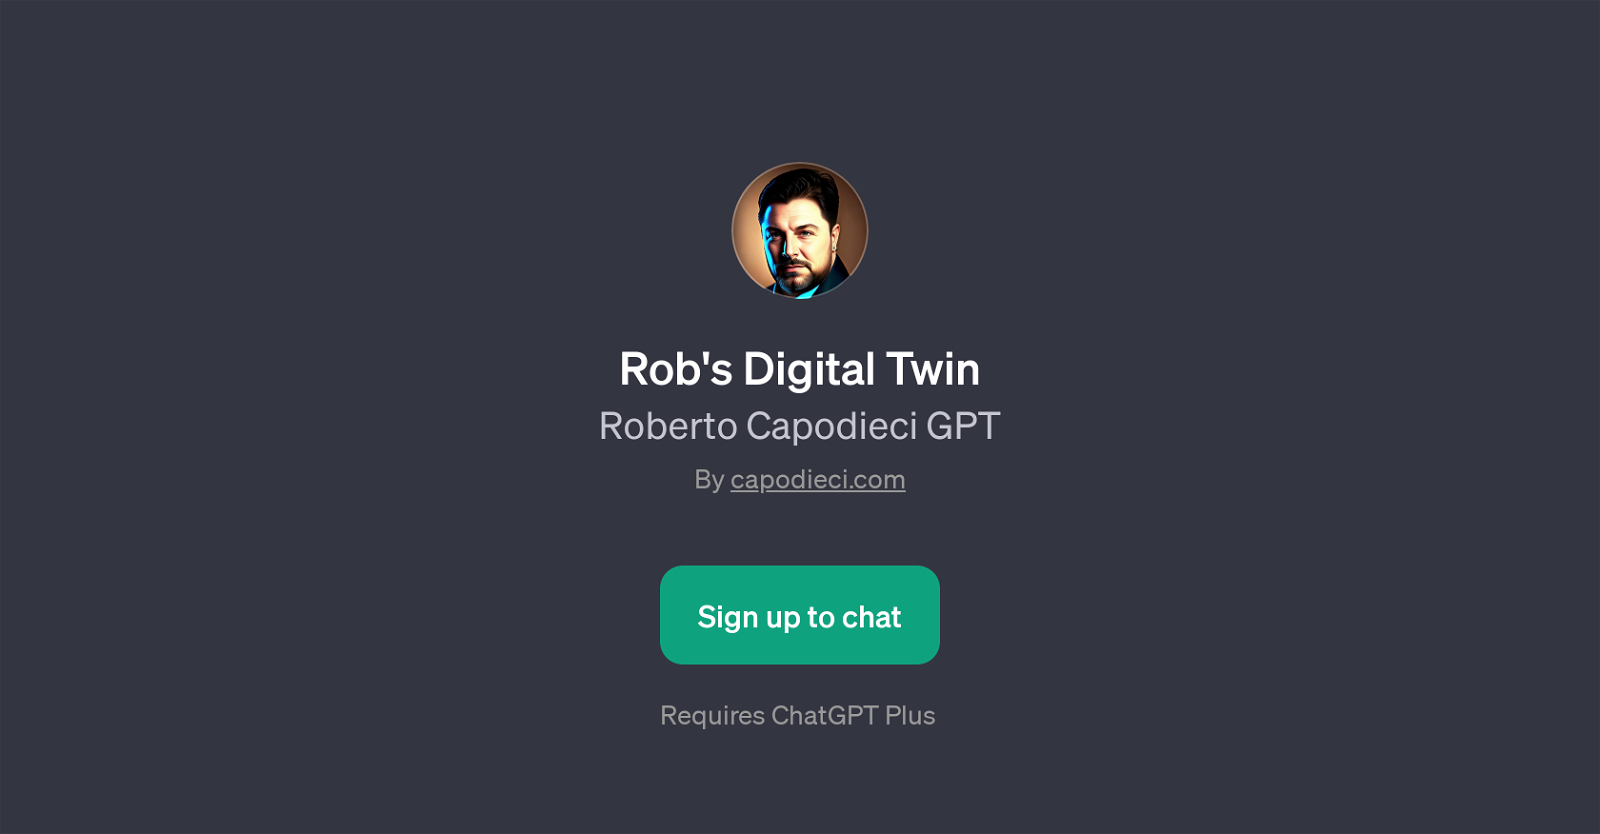 Rob's Digital Twin website